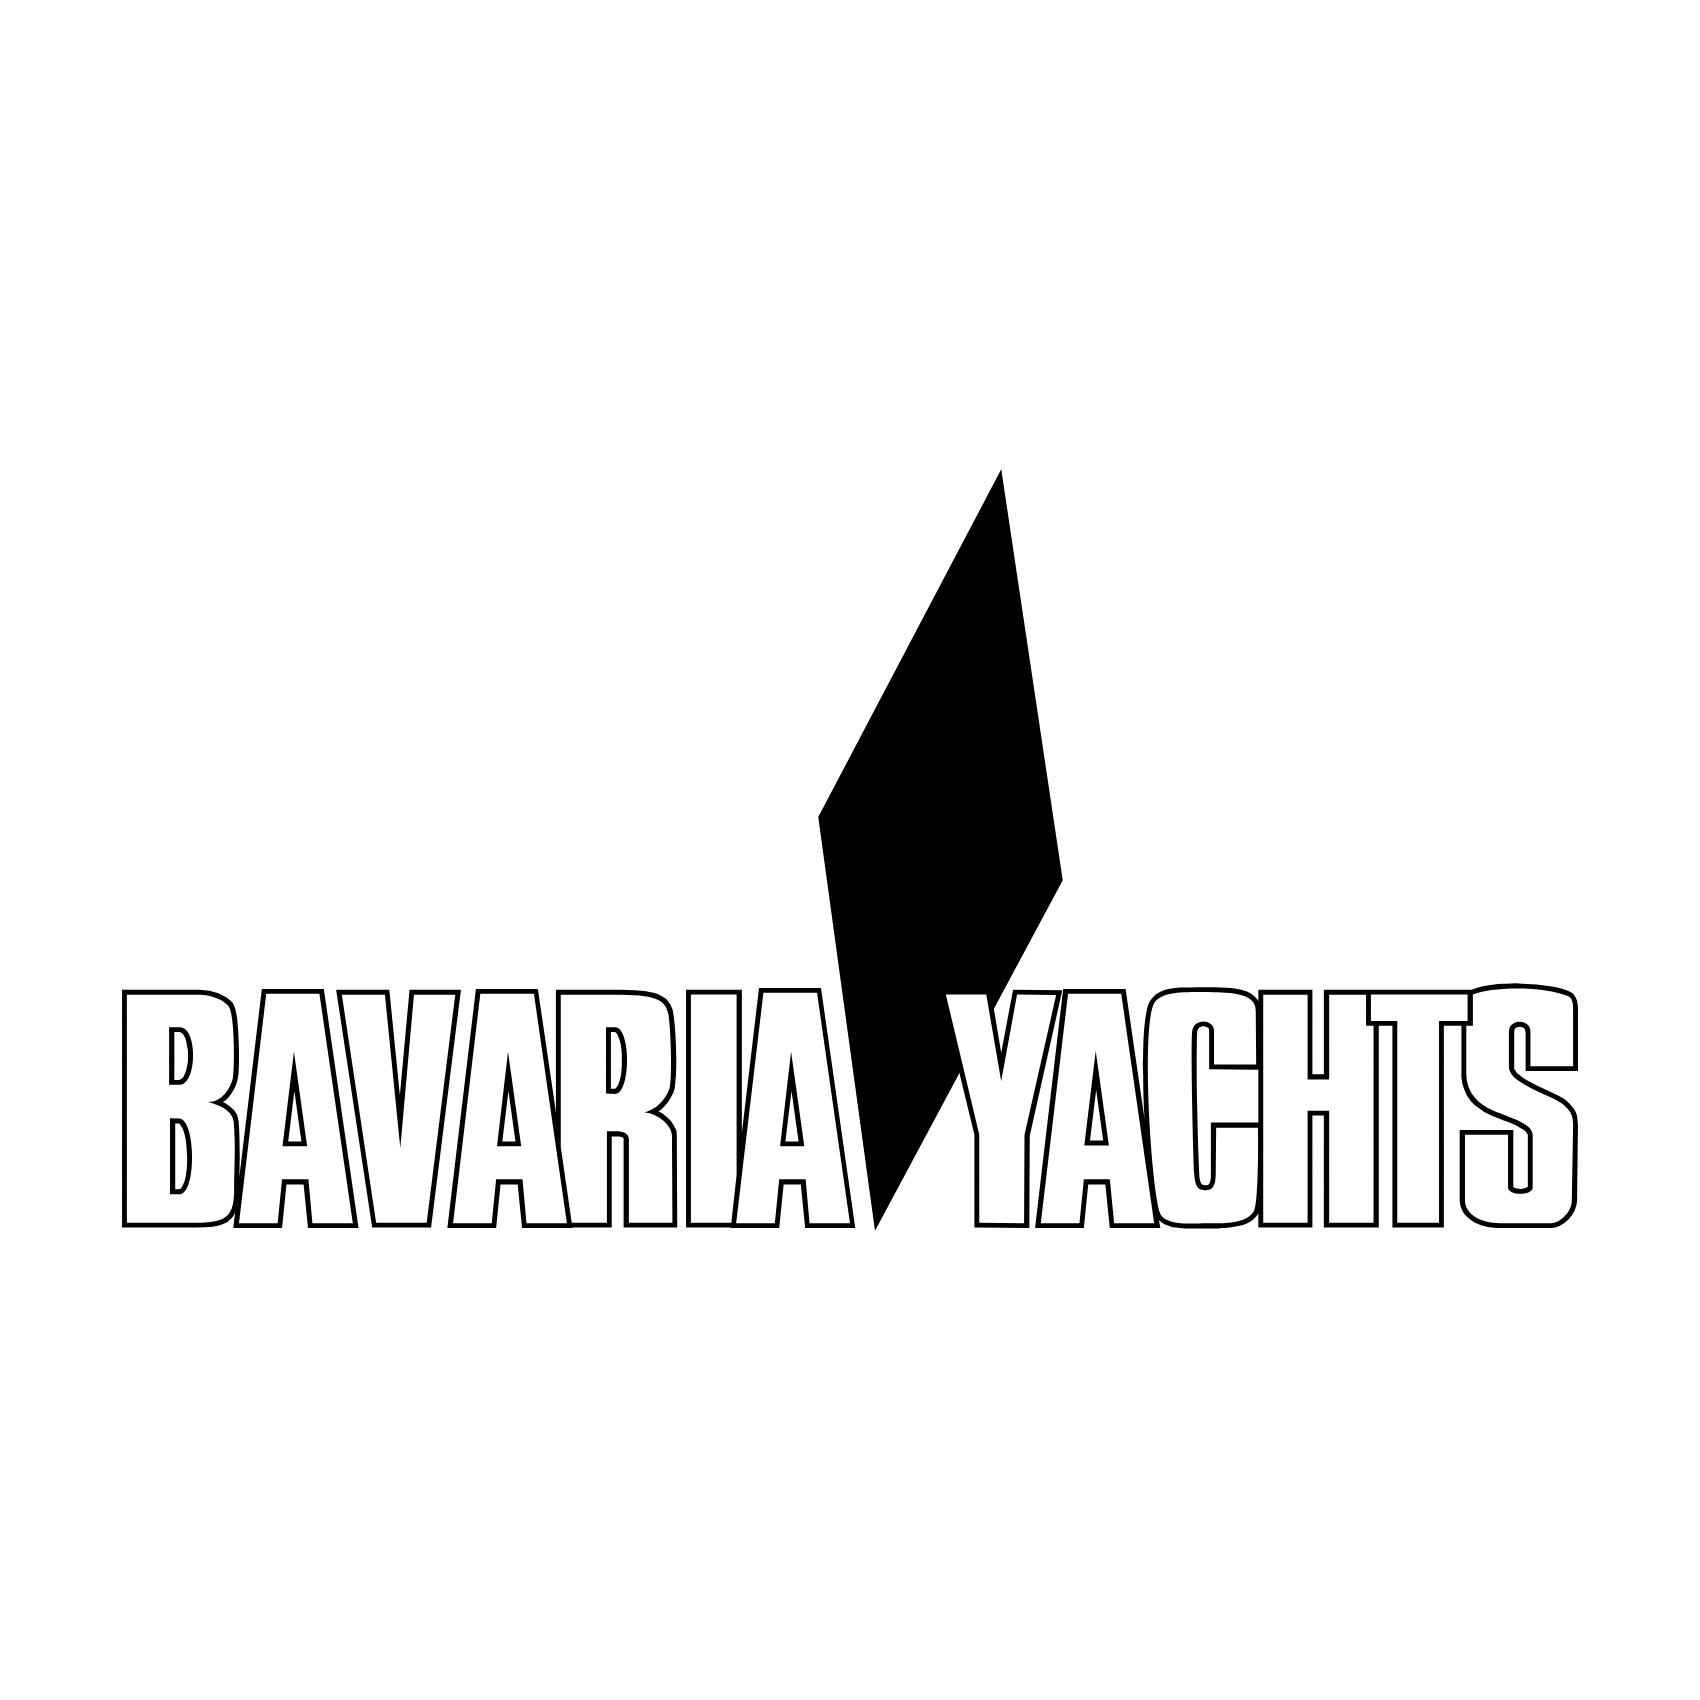 bavaria yacht logo